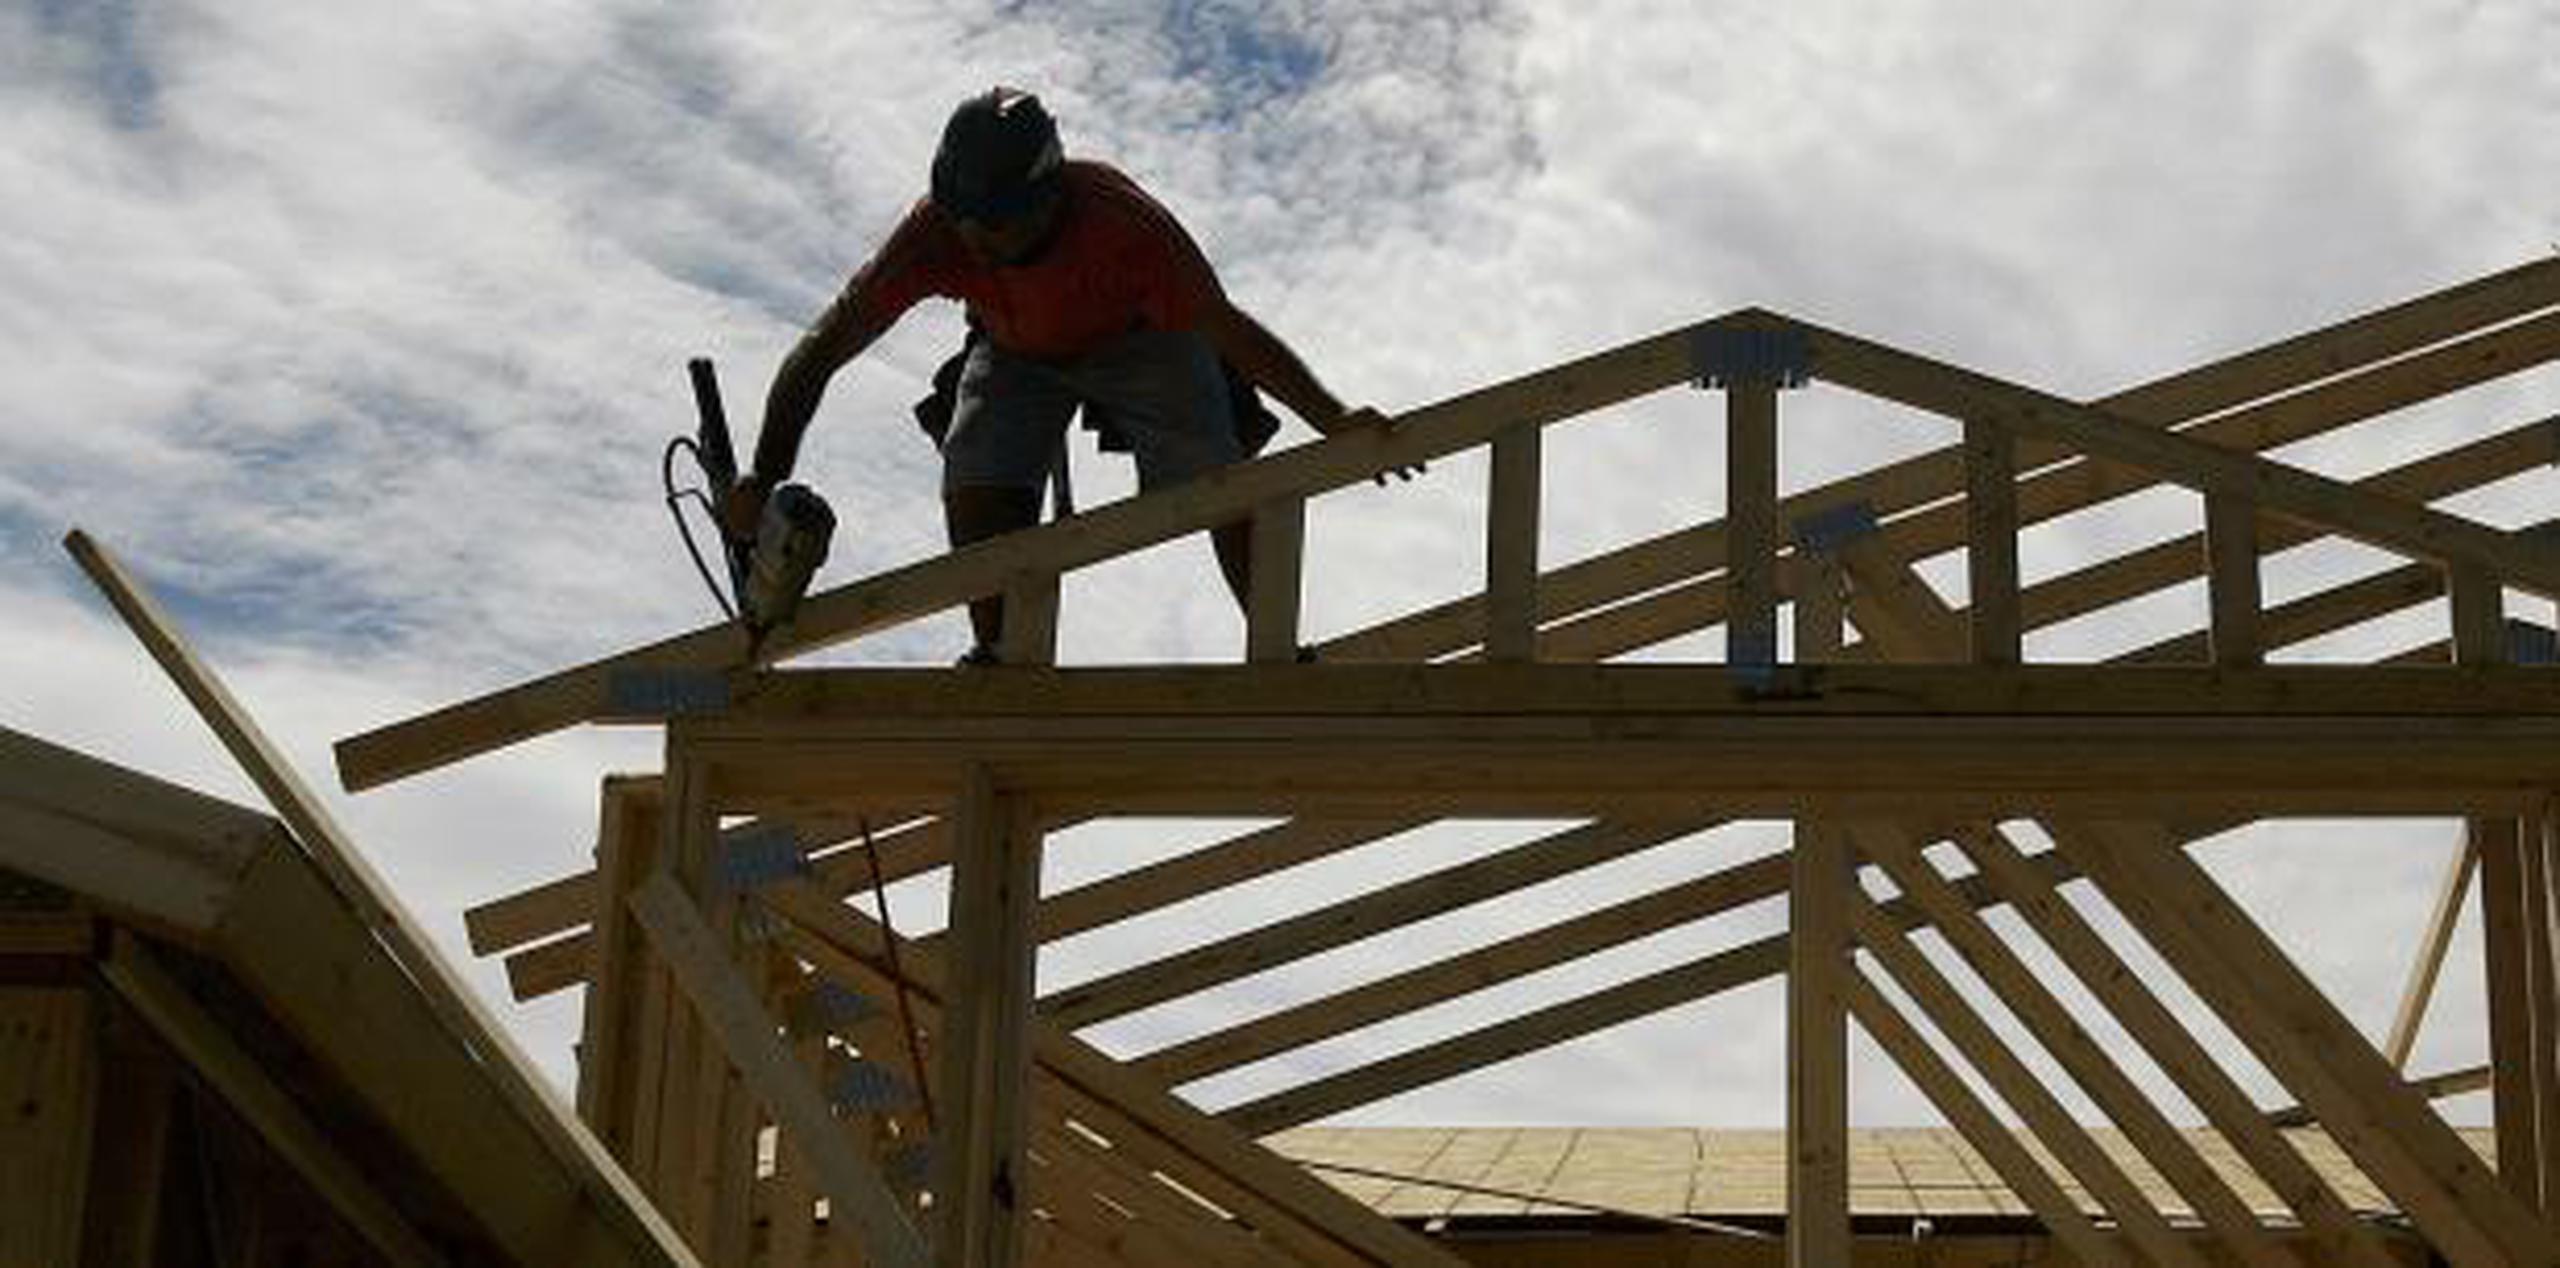 Gracias a la aprobación reciente de una ley, los obreros de construcción que trabajen en proyectos del gobierno tendrán un salario mínimo asegurado de $15 la hora. (archivo)

